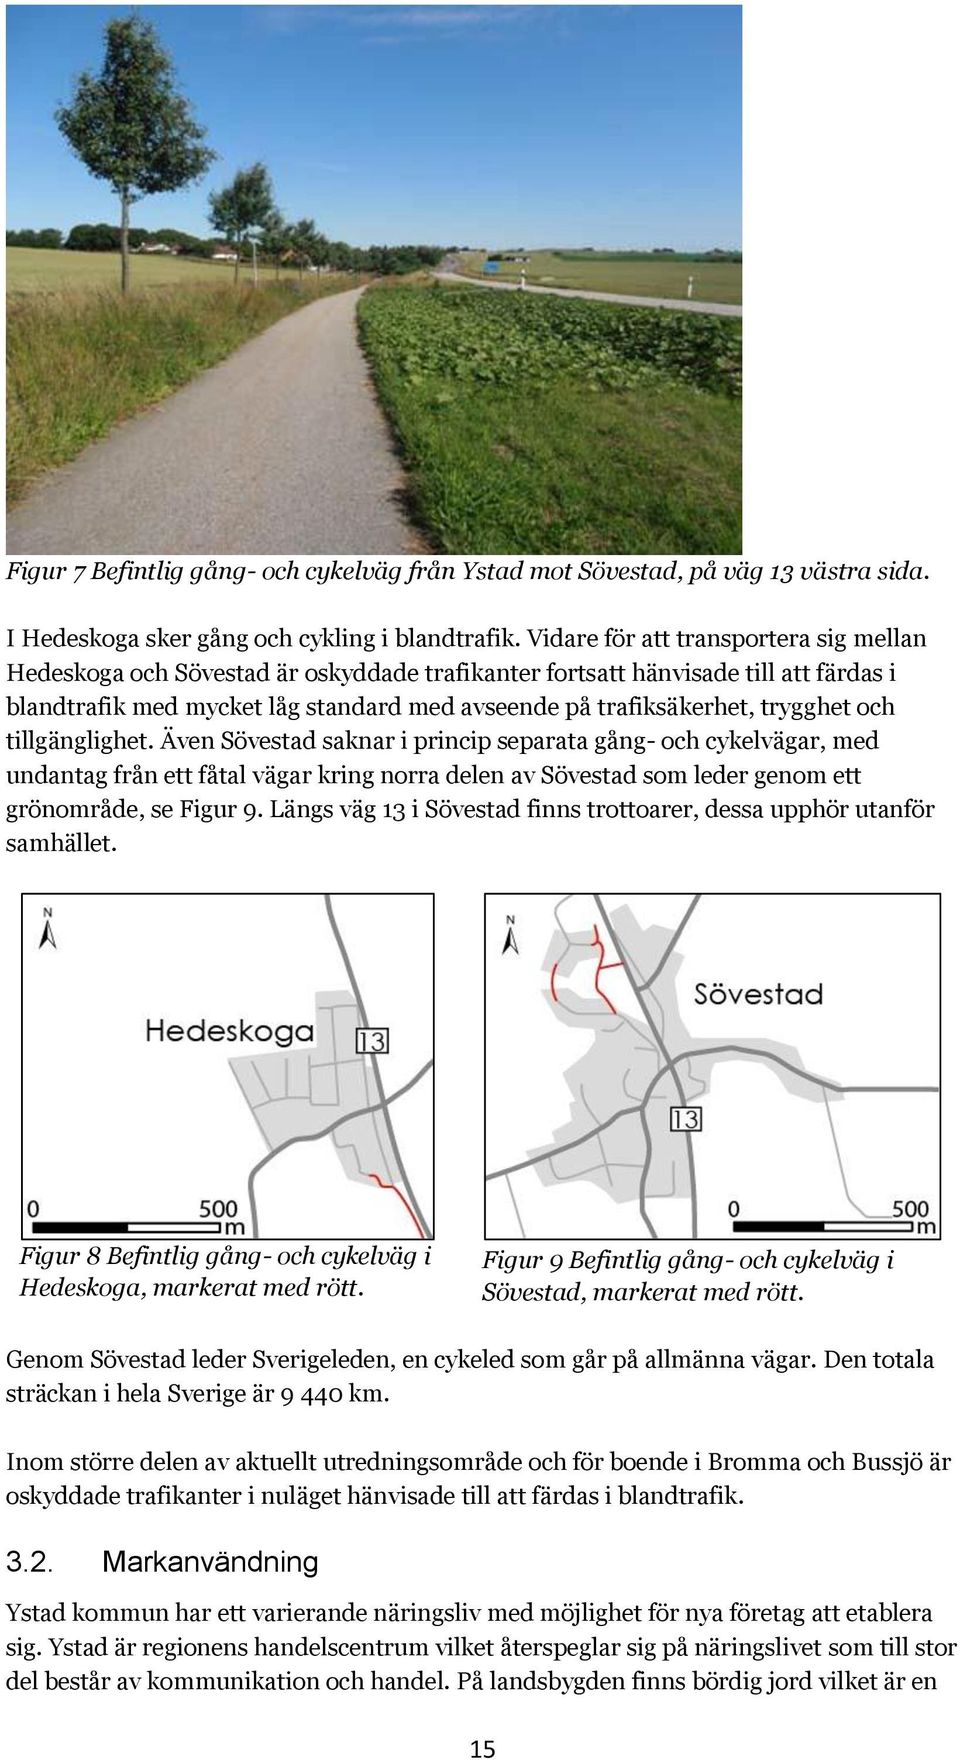 trygghet och tillgänglighet. Även Sövestad saknar i princip separata gång- och cykelvägar, med undantag från ett fåtal vägar kring norra delen av Sövestad som leder genom ett grönområde, se Figur 9.